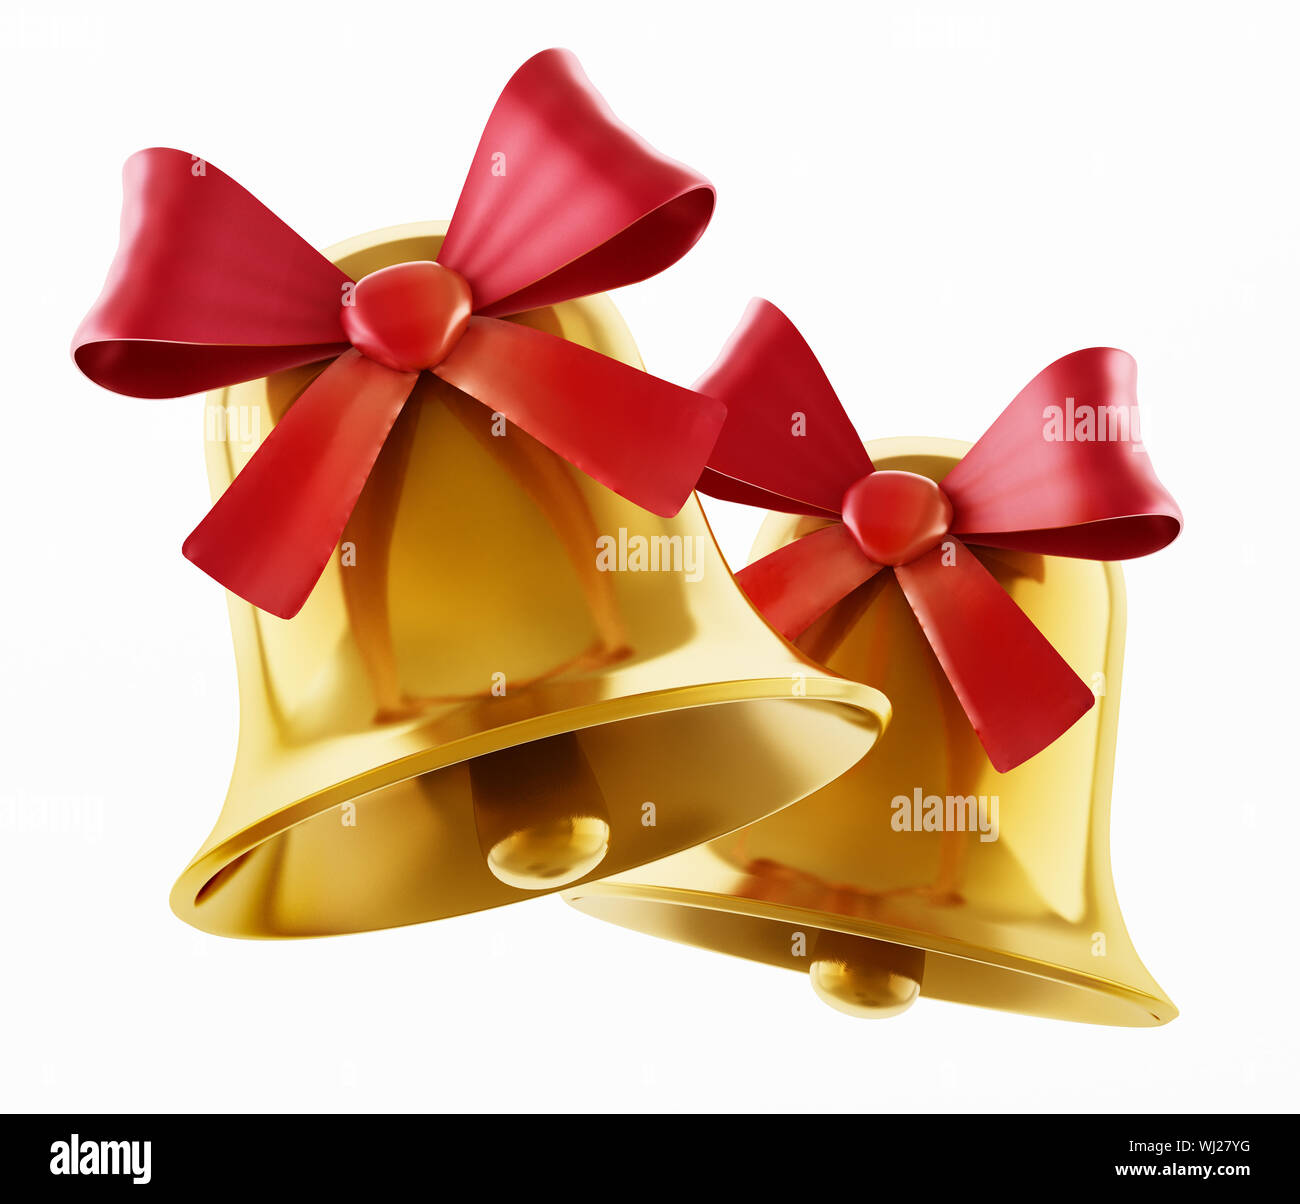 Goldene Glöckchen mit roter Schleife auf weißem Hintergrund. 3D-Darstellung. Stockfoto